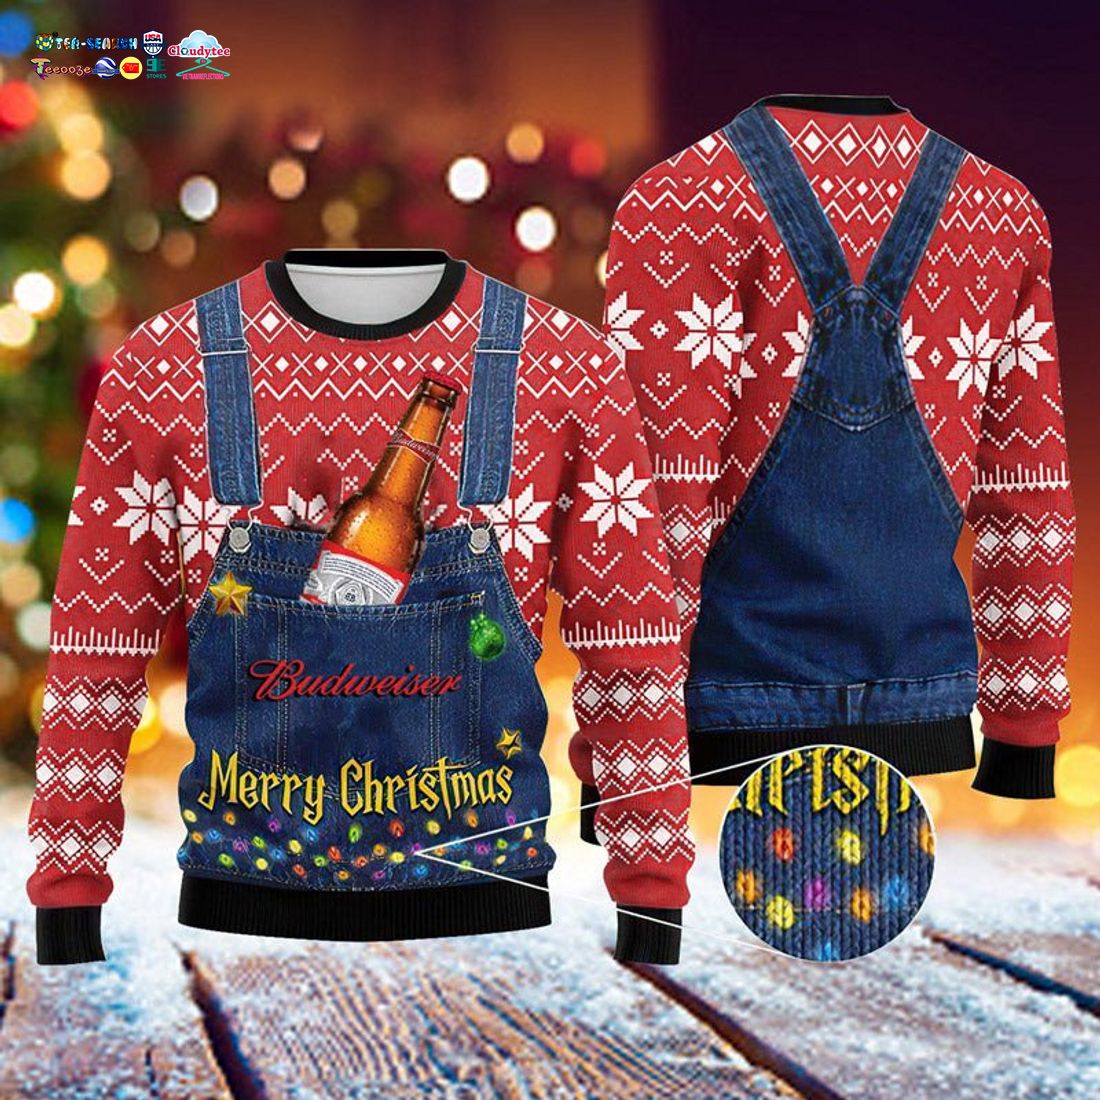 merry-christmas-budweiser-ugly-christmas-sweater-1-ktagV.jpg